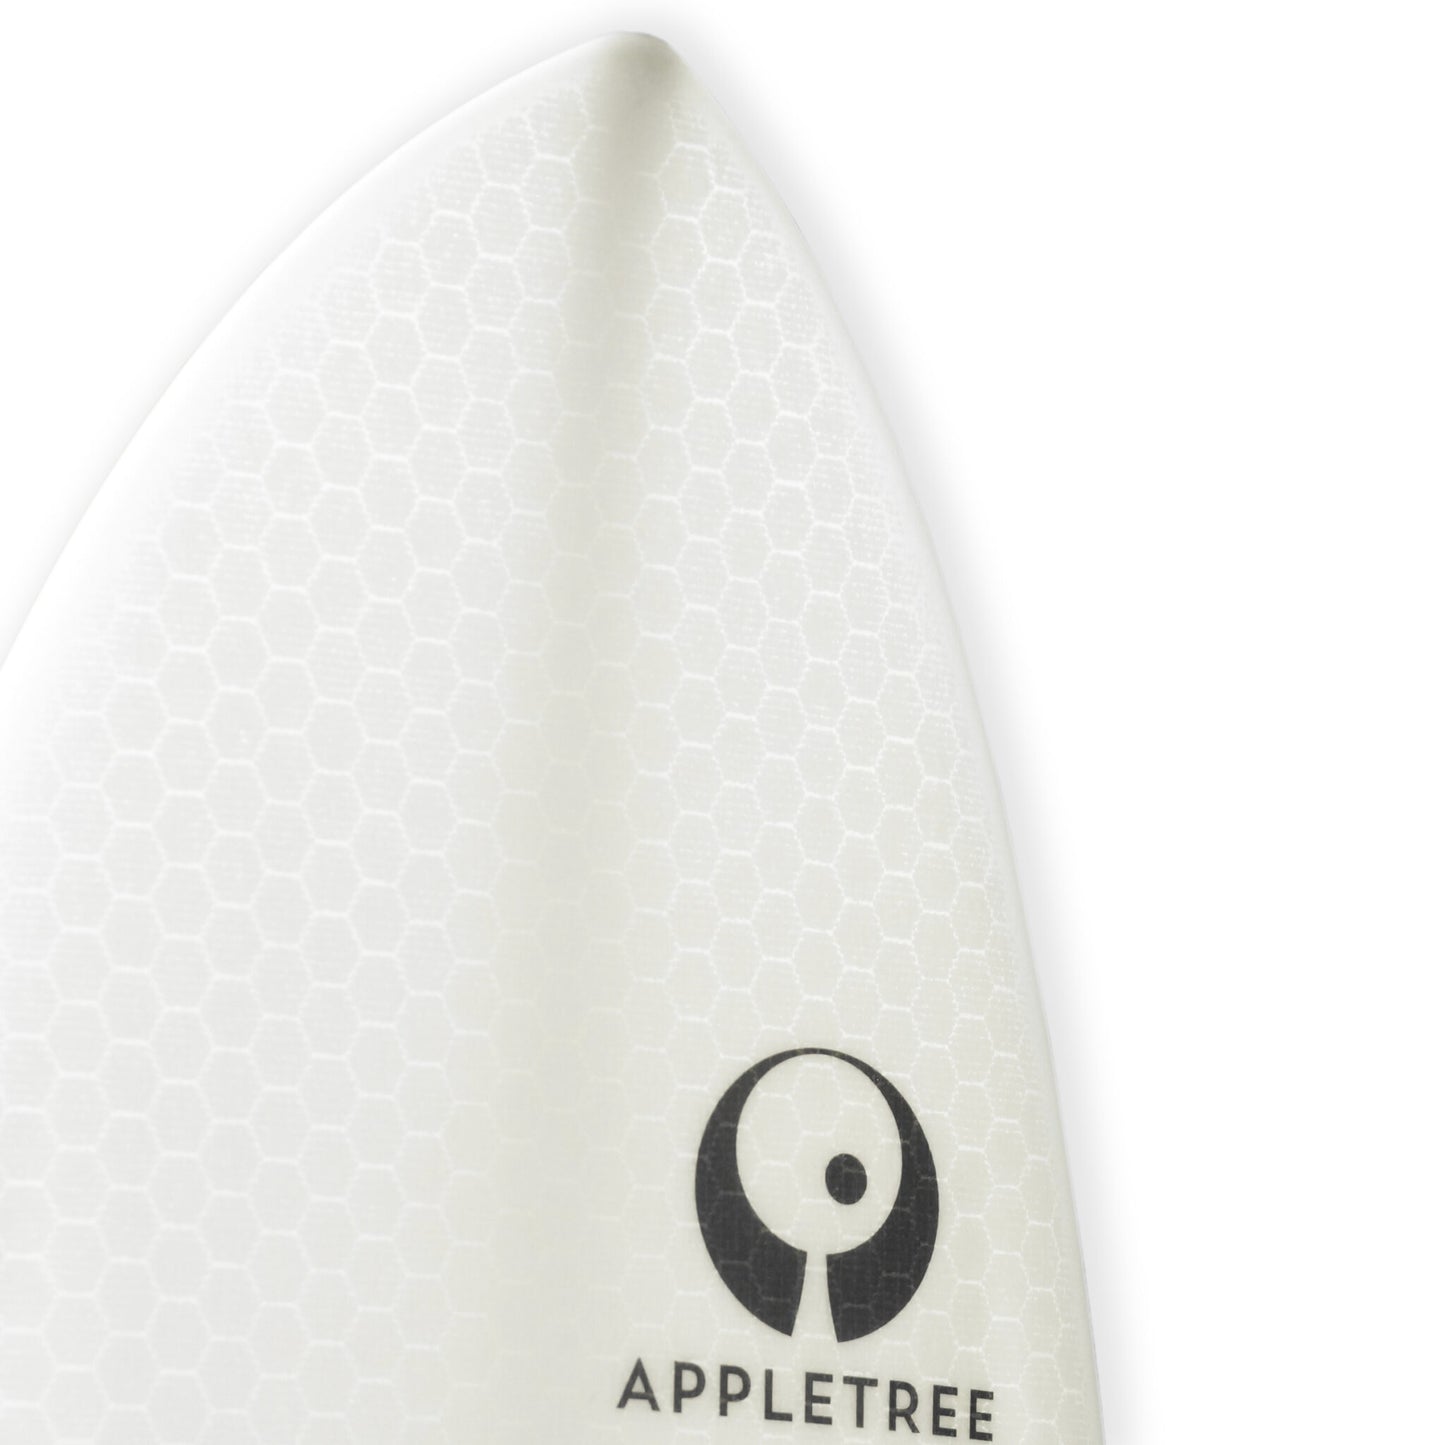 Appletree Klokhouse Noseless White Line Kite Surfboard